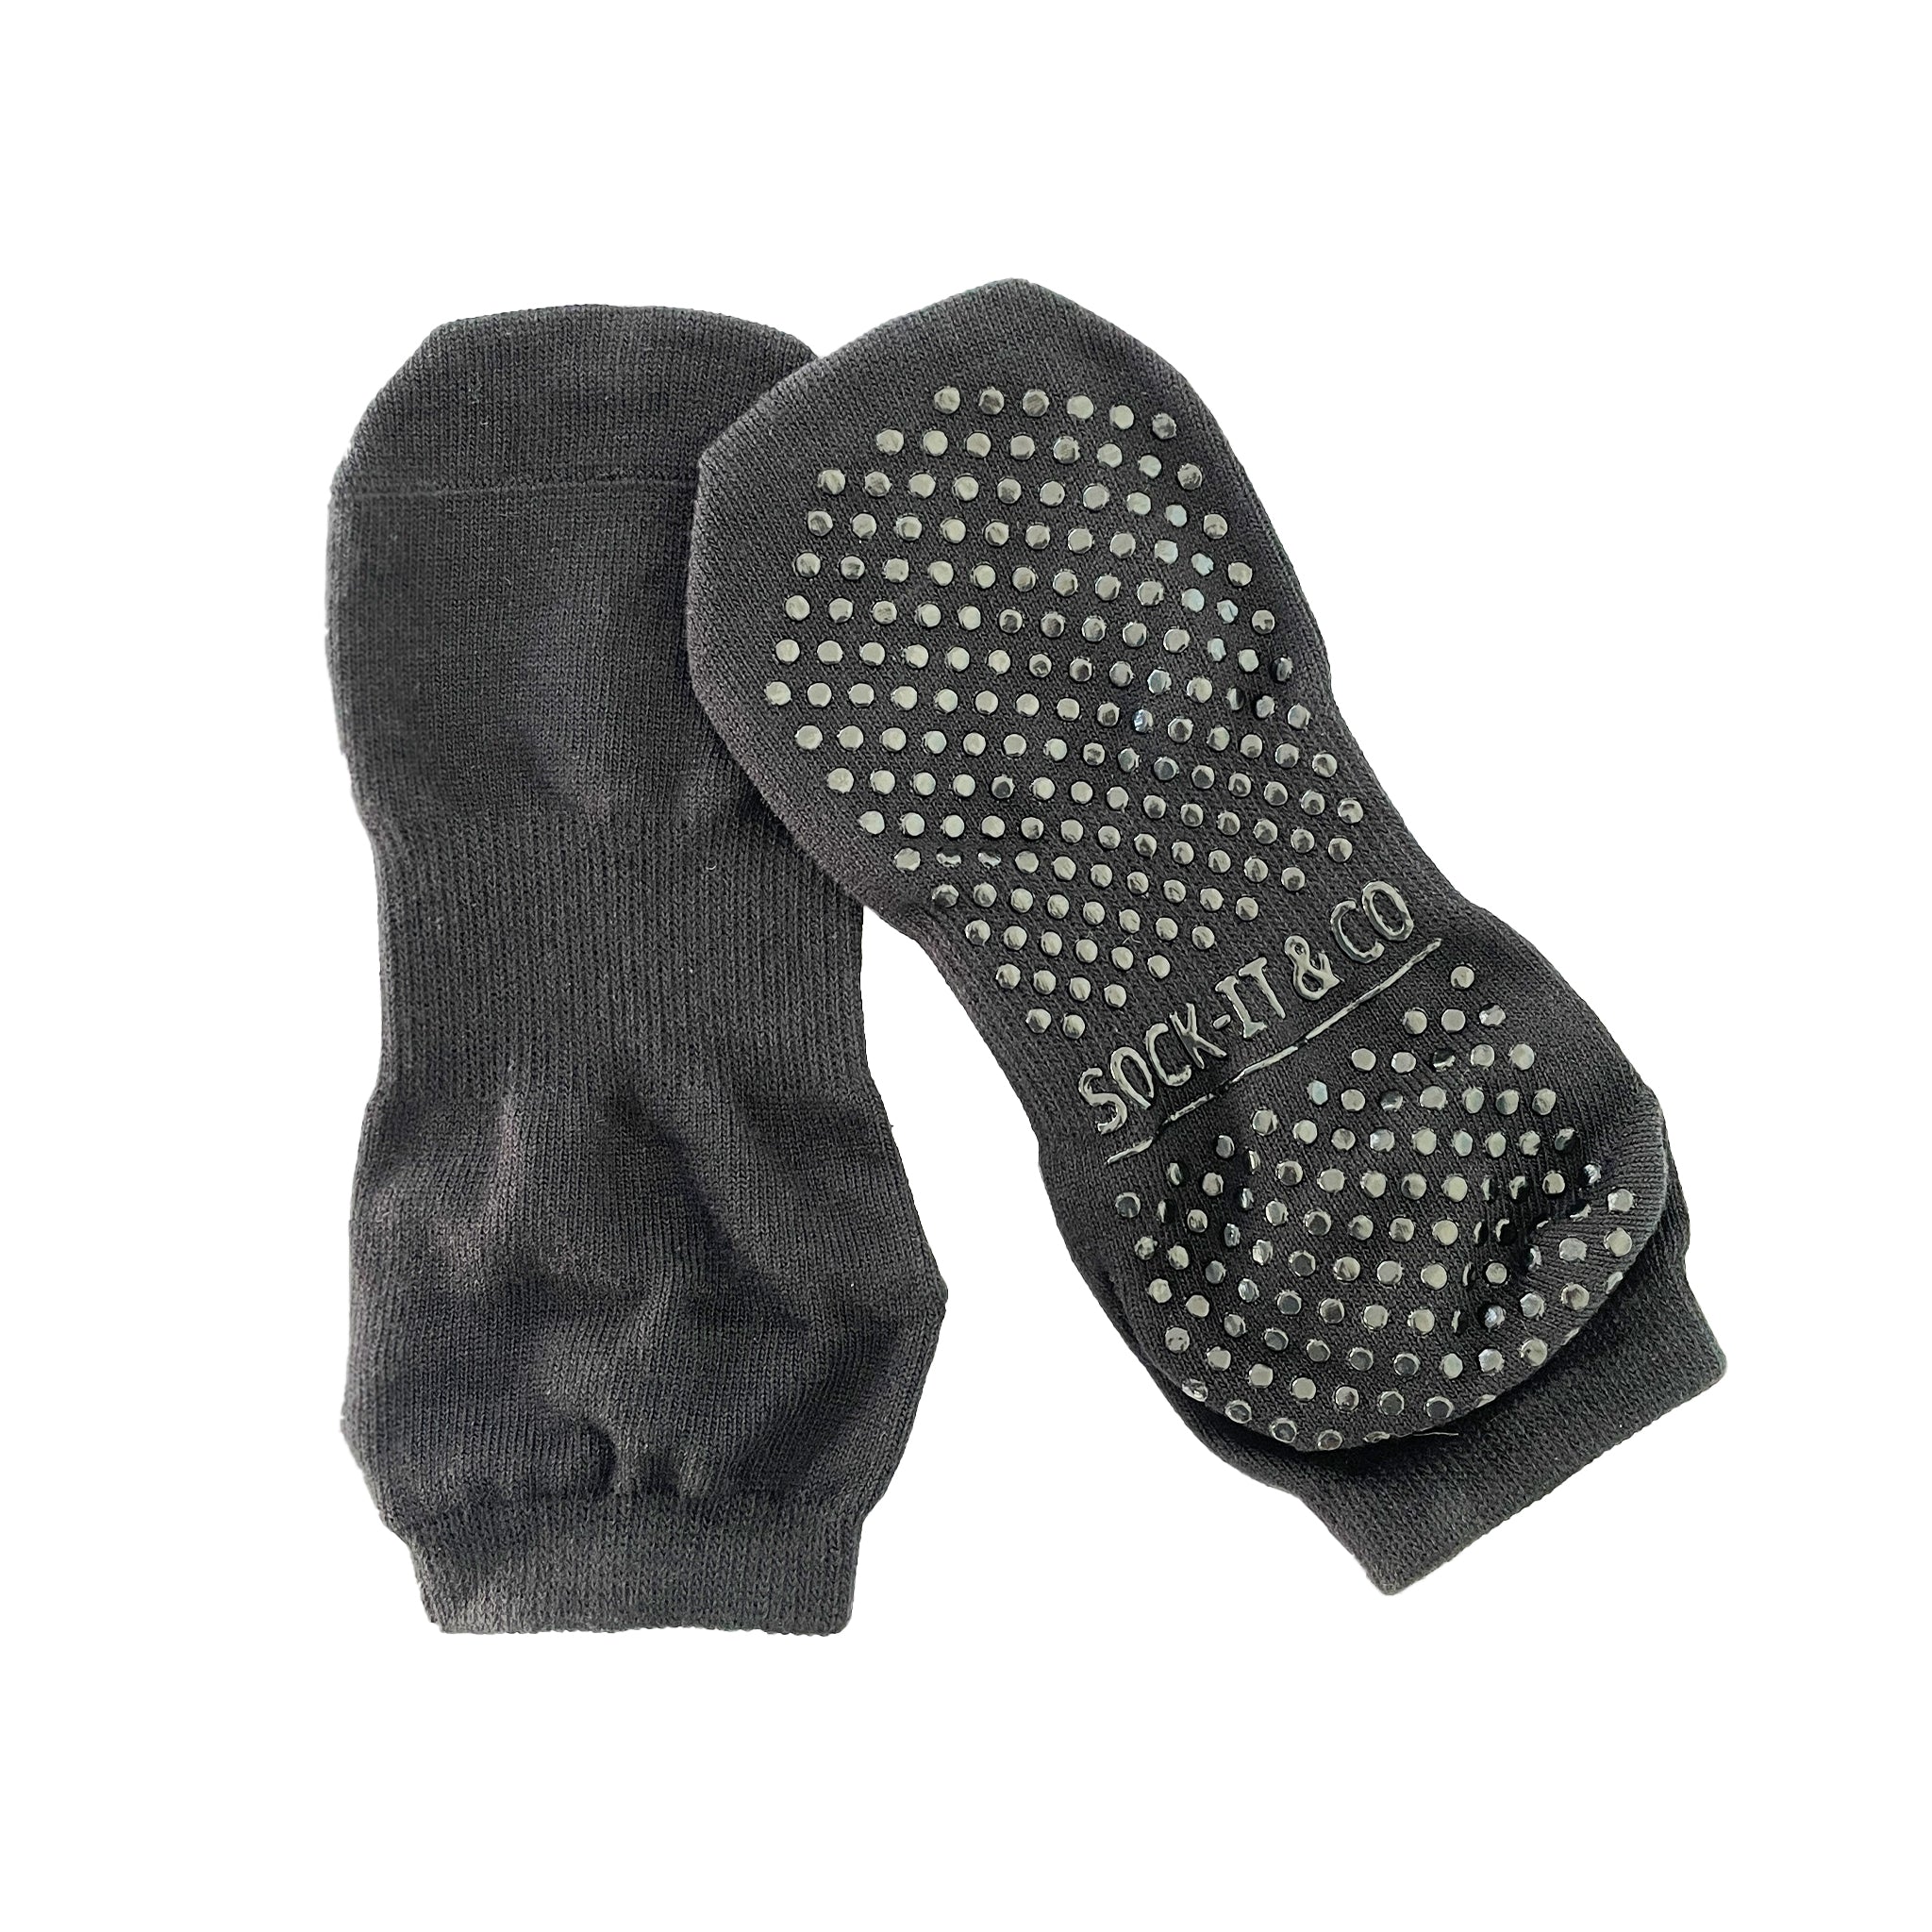 Toeless Black Non Slip Grip Sock